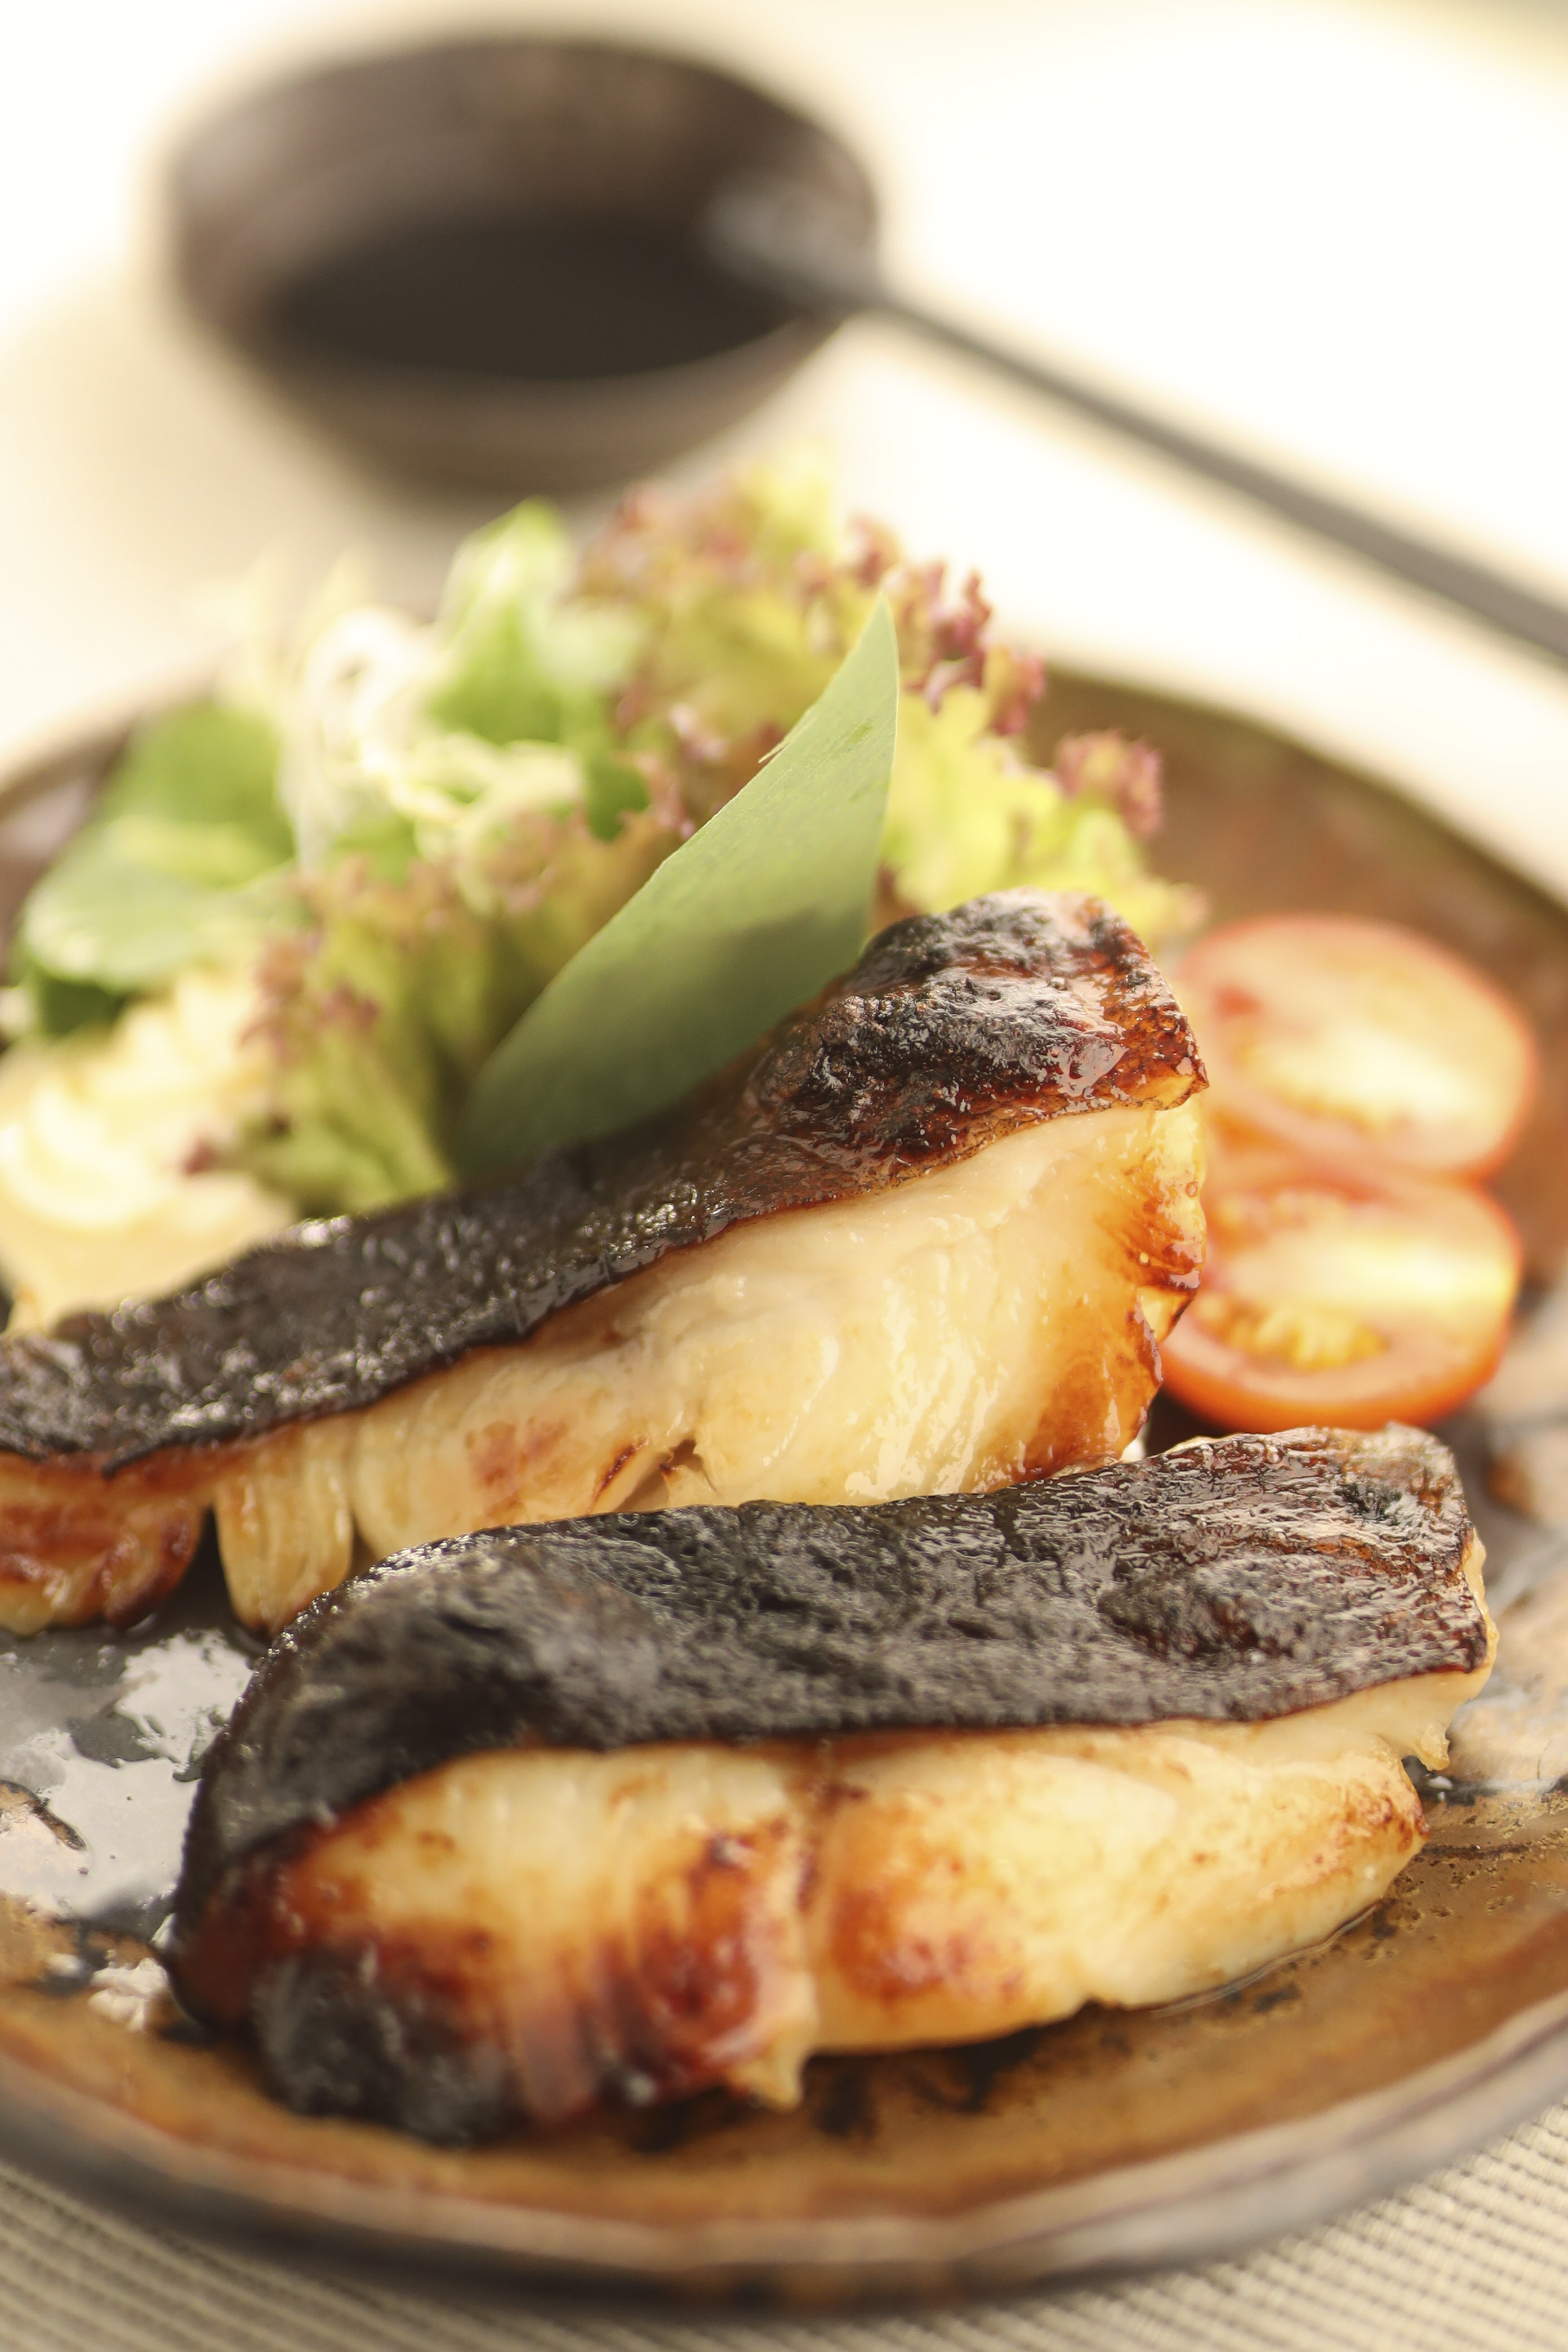 「一休(居食屋)日本料理」 - 銀鱈魚西京燒用上西京面豉將銀鱈魚醃製兩天，再以高溫烤至金黃色，不但入口嫩滑，更滲透濃濃面豉香味，只吃一口便齒頰留香。